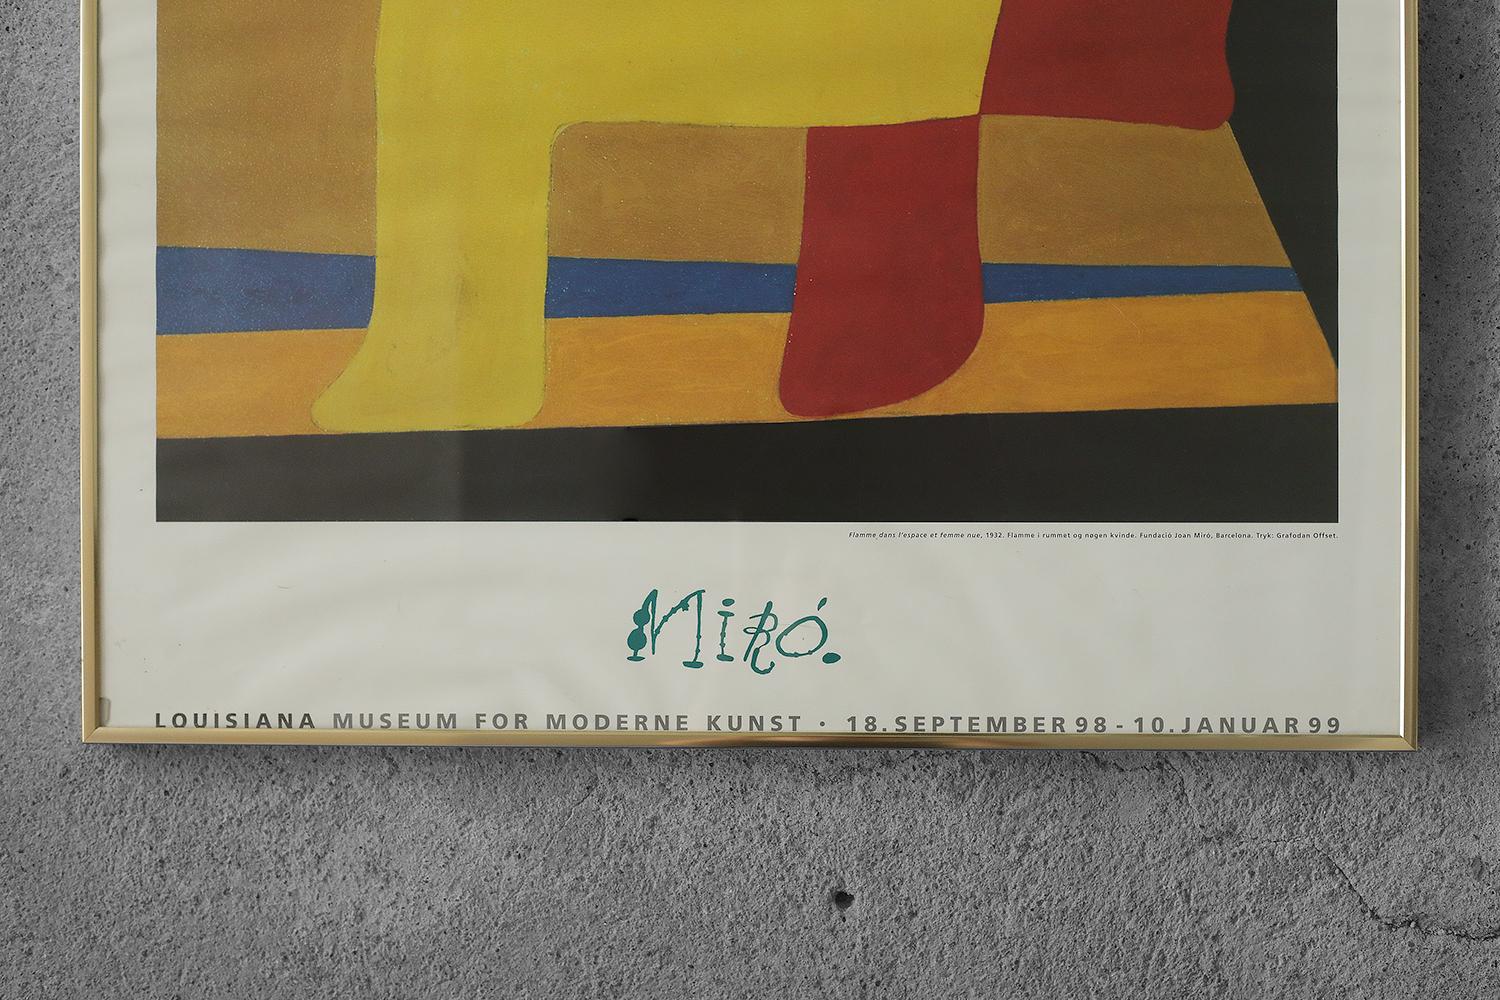 Affiche de l'exposition Joan Miró, Louisiana Art Museum au Danemark du 18 septembre 1998 au 10 janvier 1999. L'œuvre 